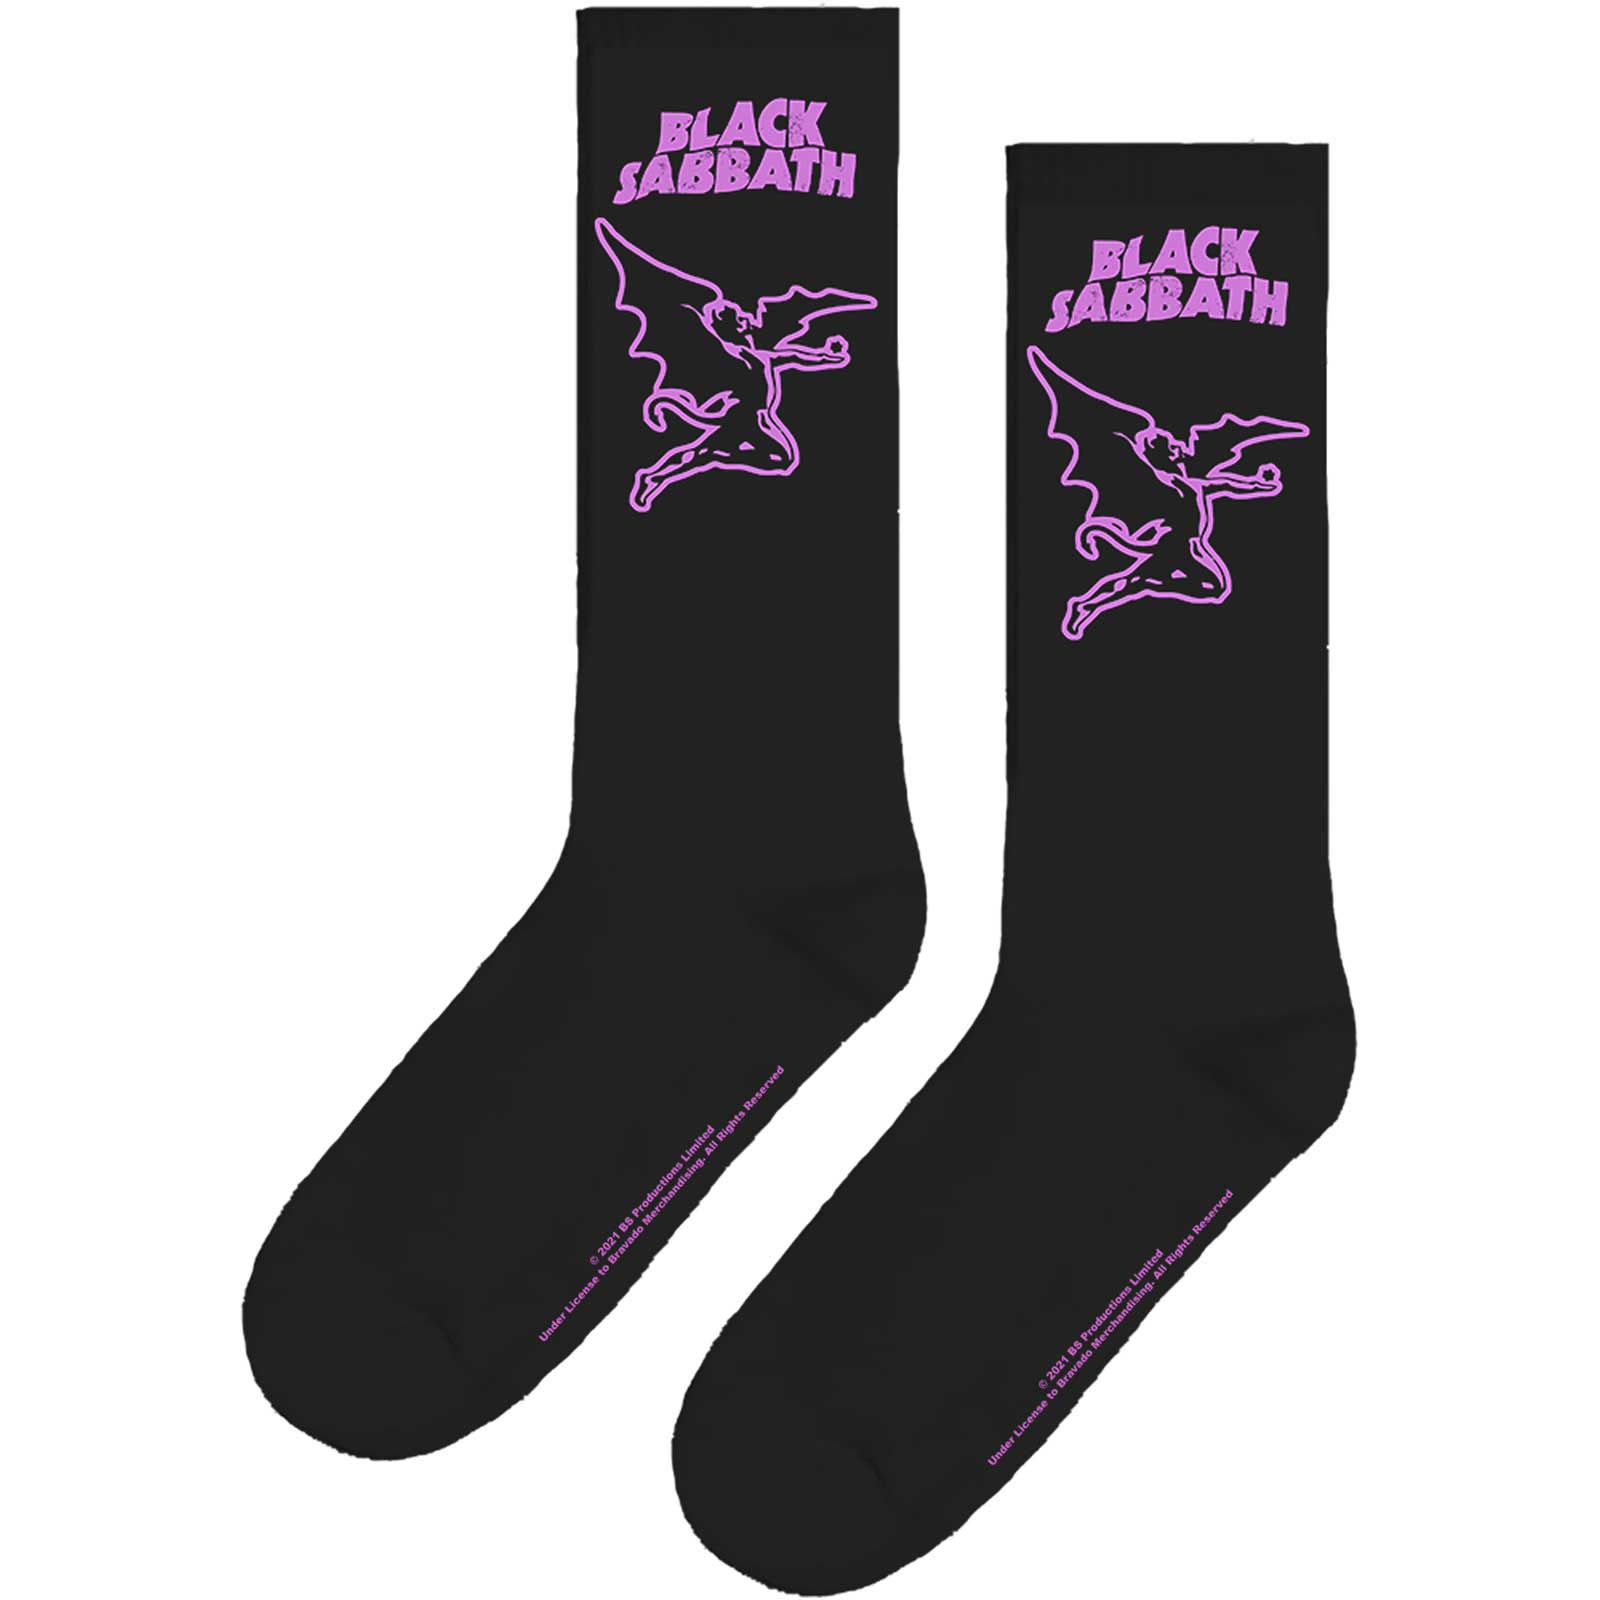 Black Sabbath Unisex Ankle Socks: Master of the Universe (UK Size 7 - 11)